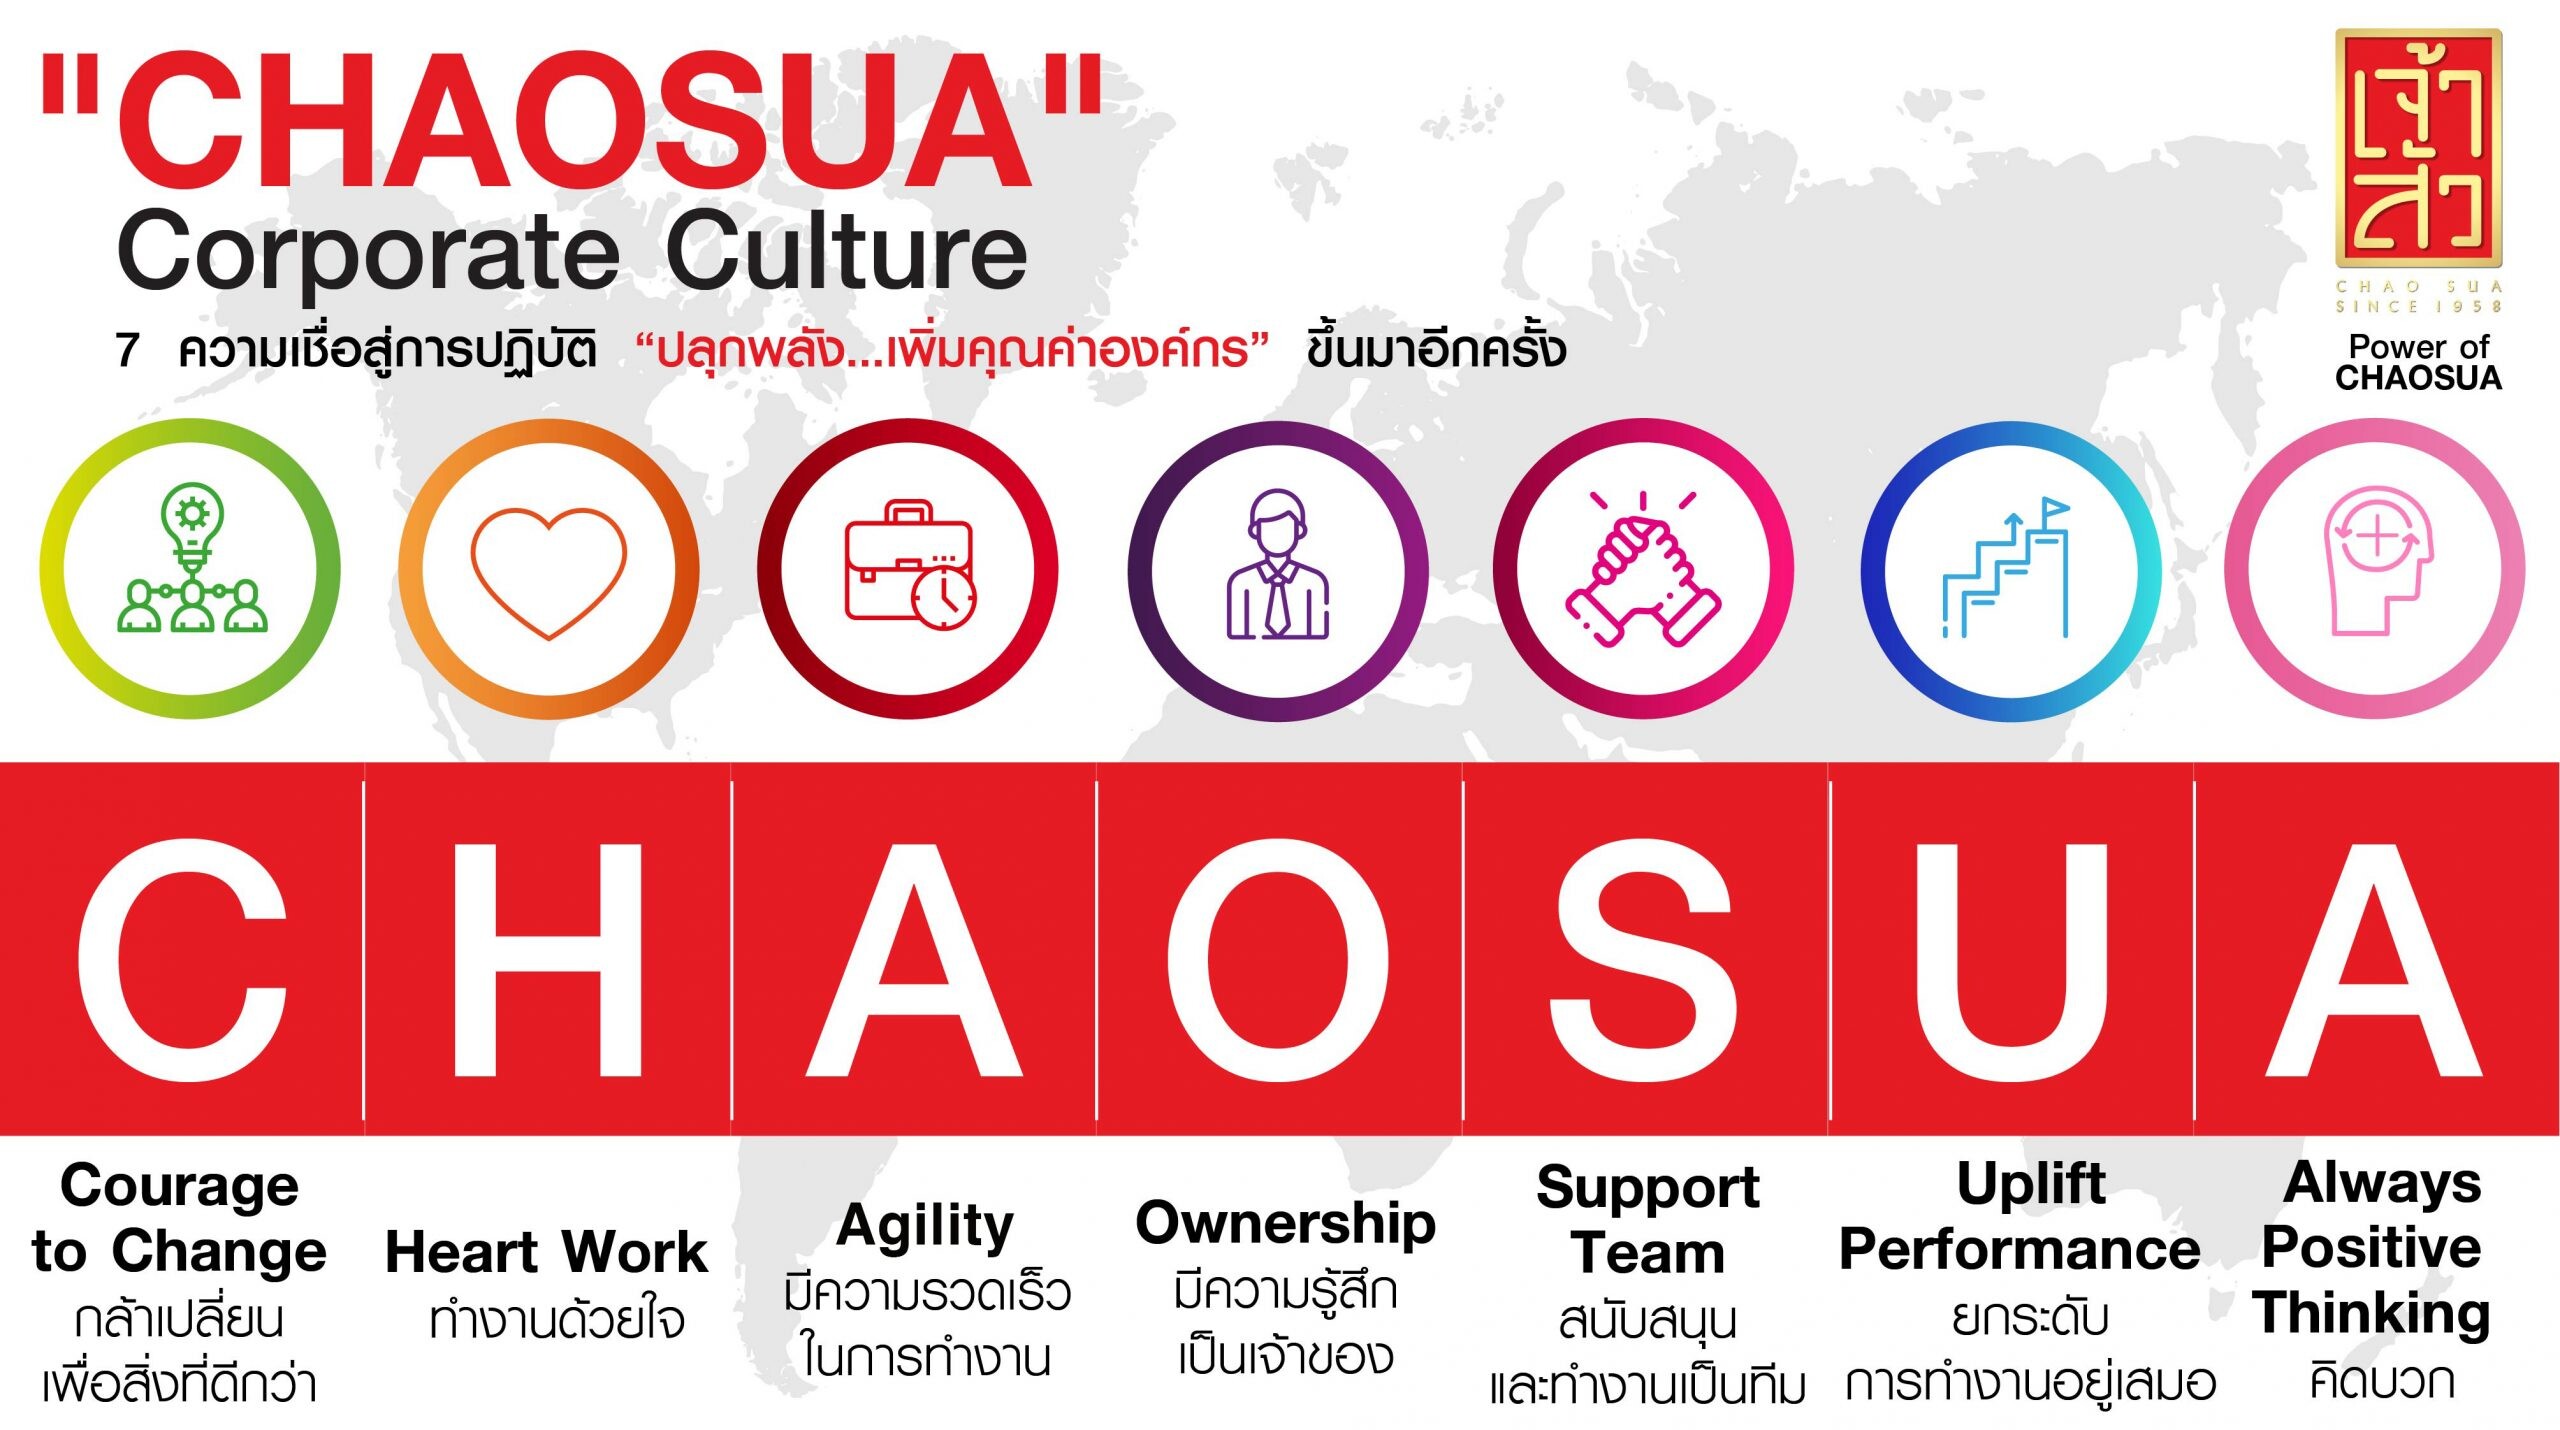 "เจ้าสัว" ชูวัฒนธรรมองค์กรใหม่ภายใต้แนวคิด CHAOSUA พร้อมปรับรูปแบบการทำงานตอบรับคนรุ่นใหม่